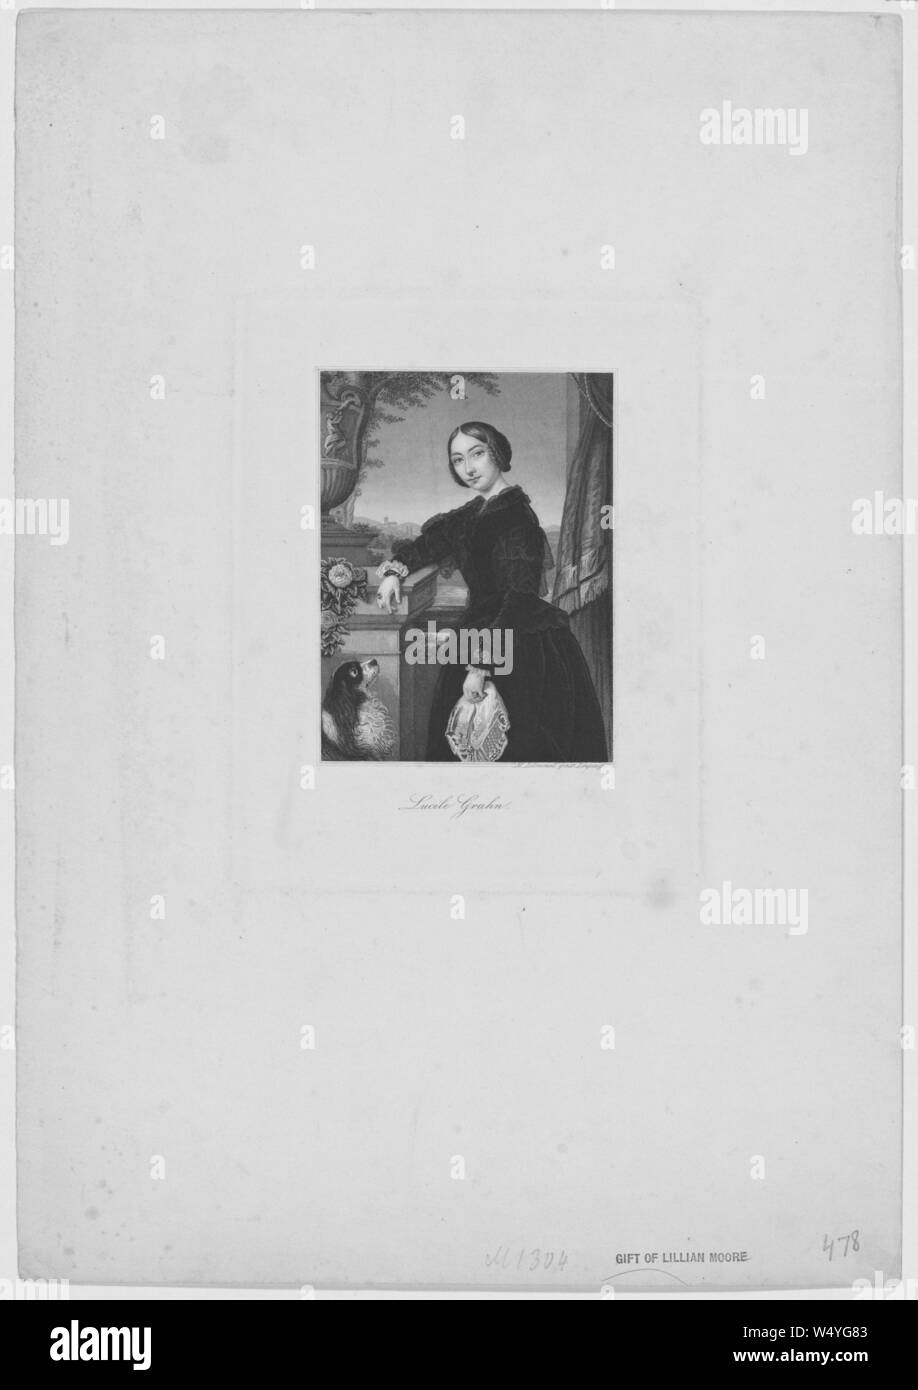 Graviert Portrait von Lucile Grahn, einer dänischen Ballerina der Romantik aus Kopenhagen, Dänemark, 1847. Von der New York Public Library. () Stockfoto